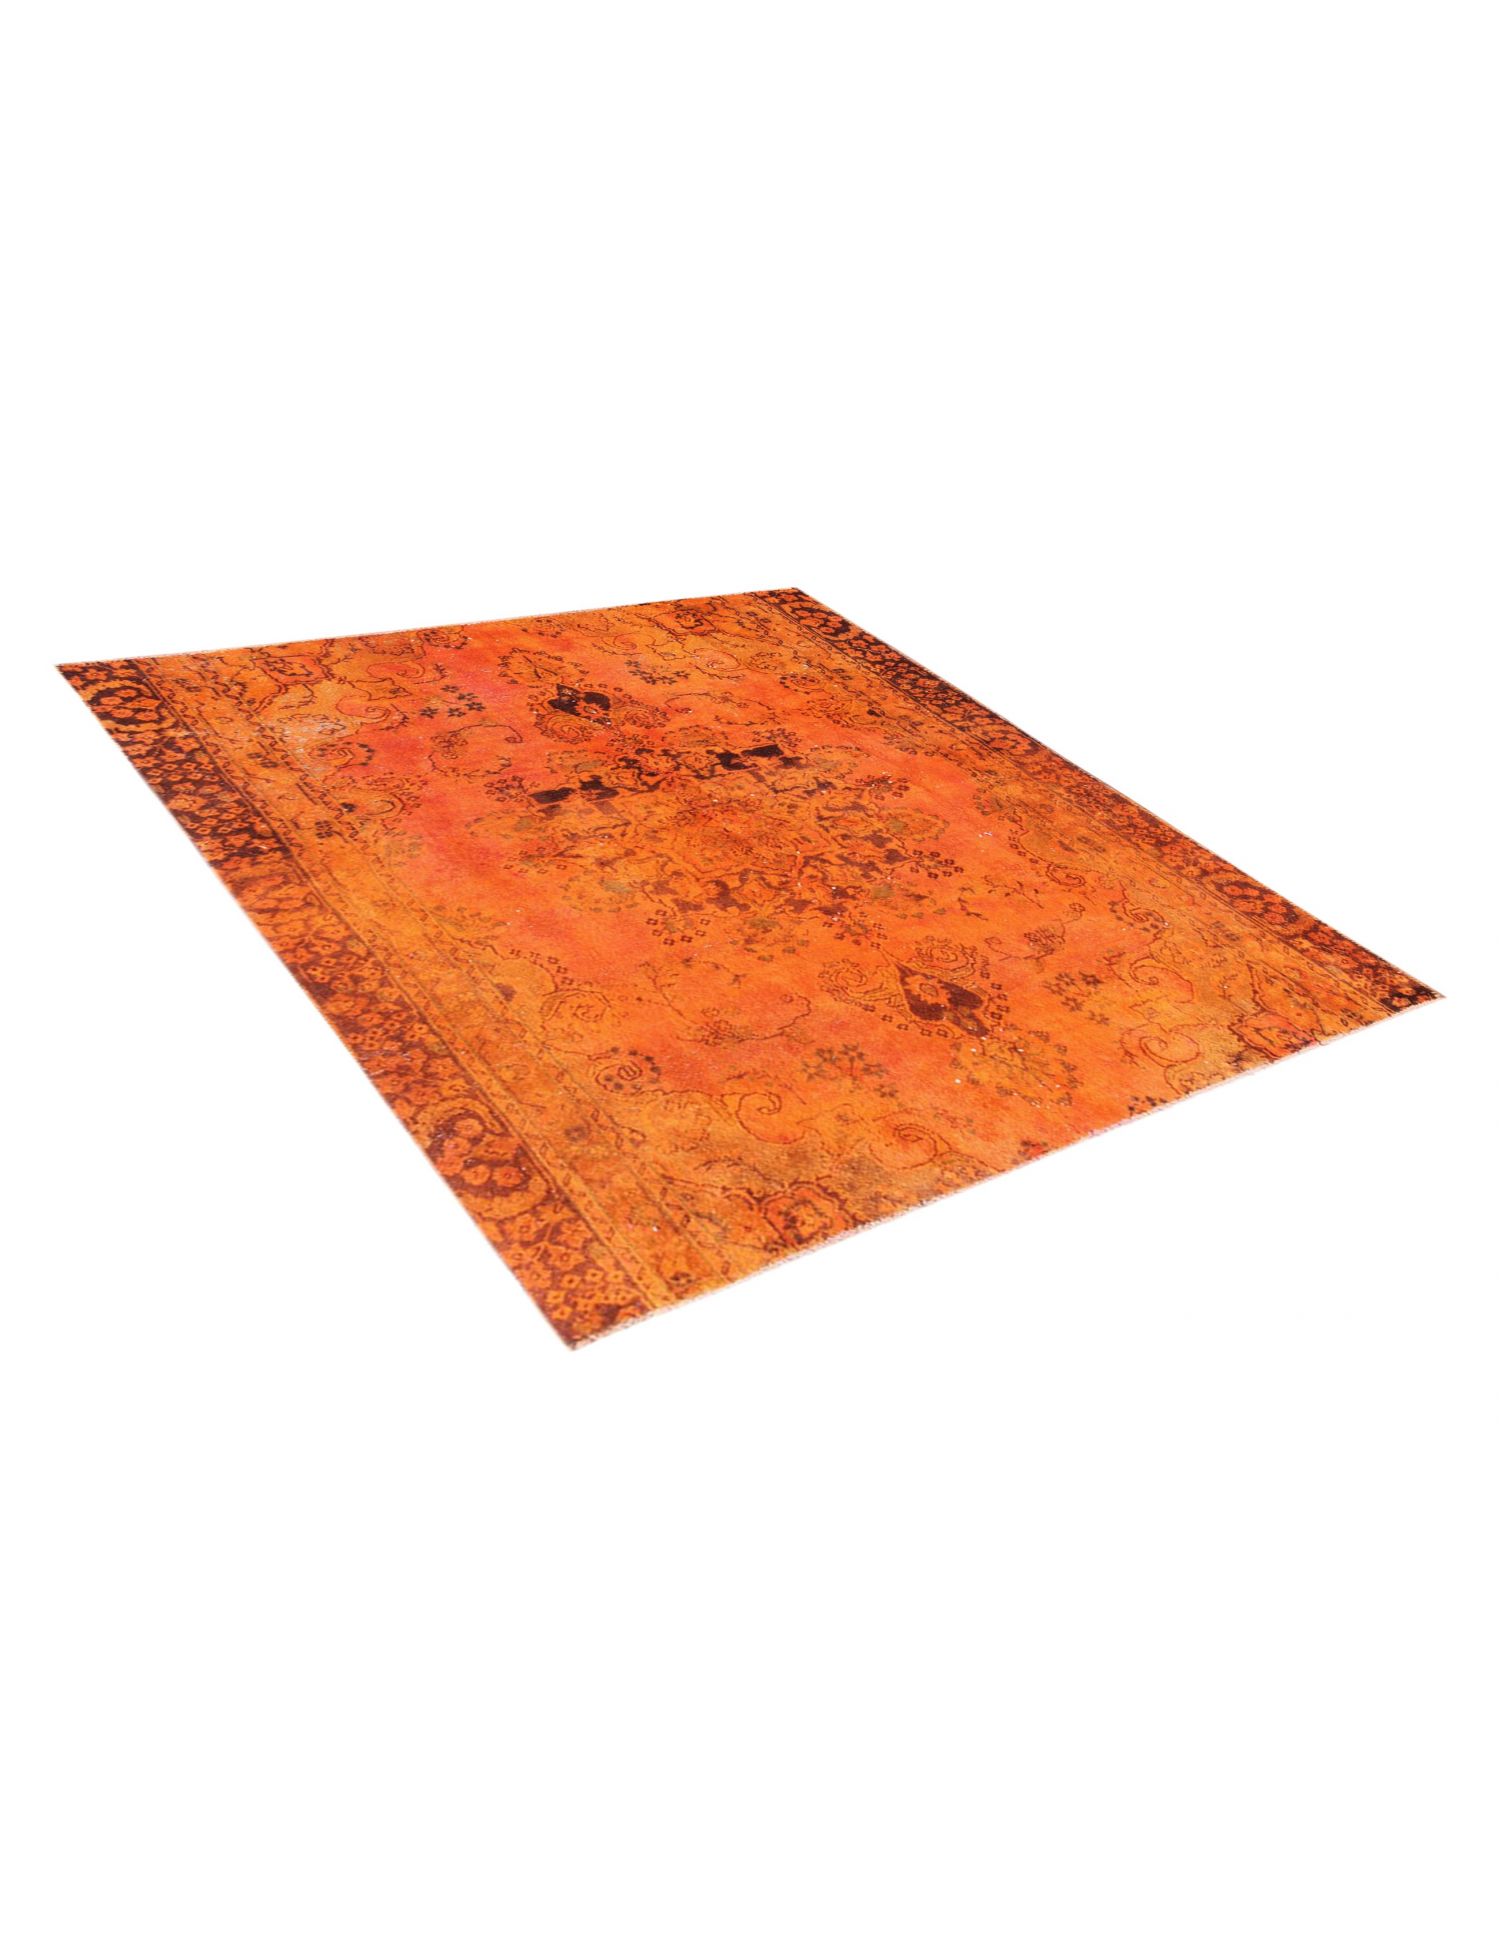 Persischer Vintage Teppich  orange <br/>200 x 175 cm